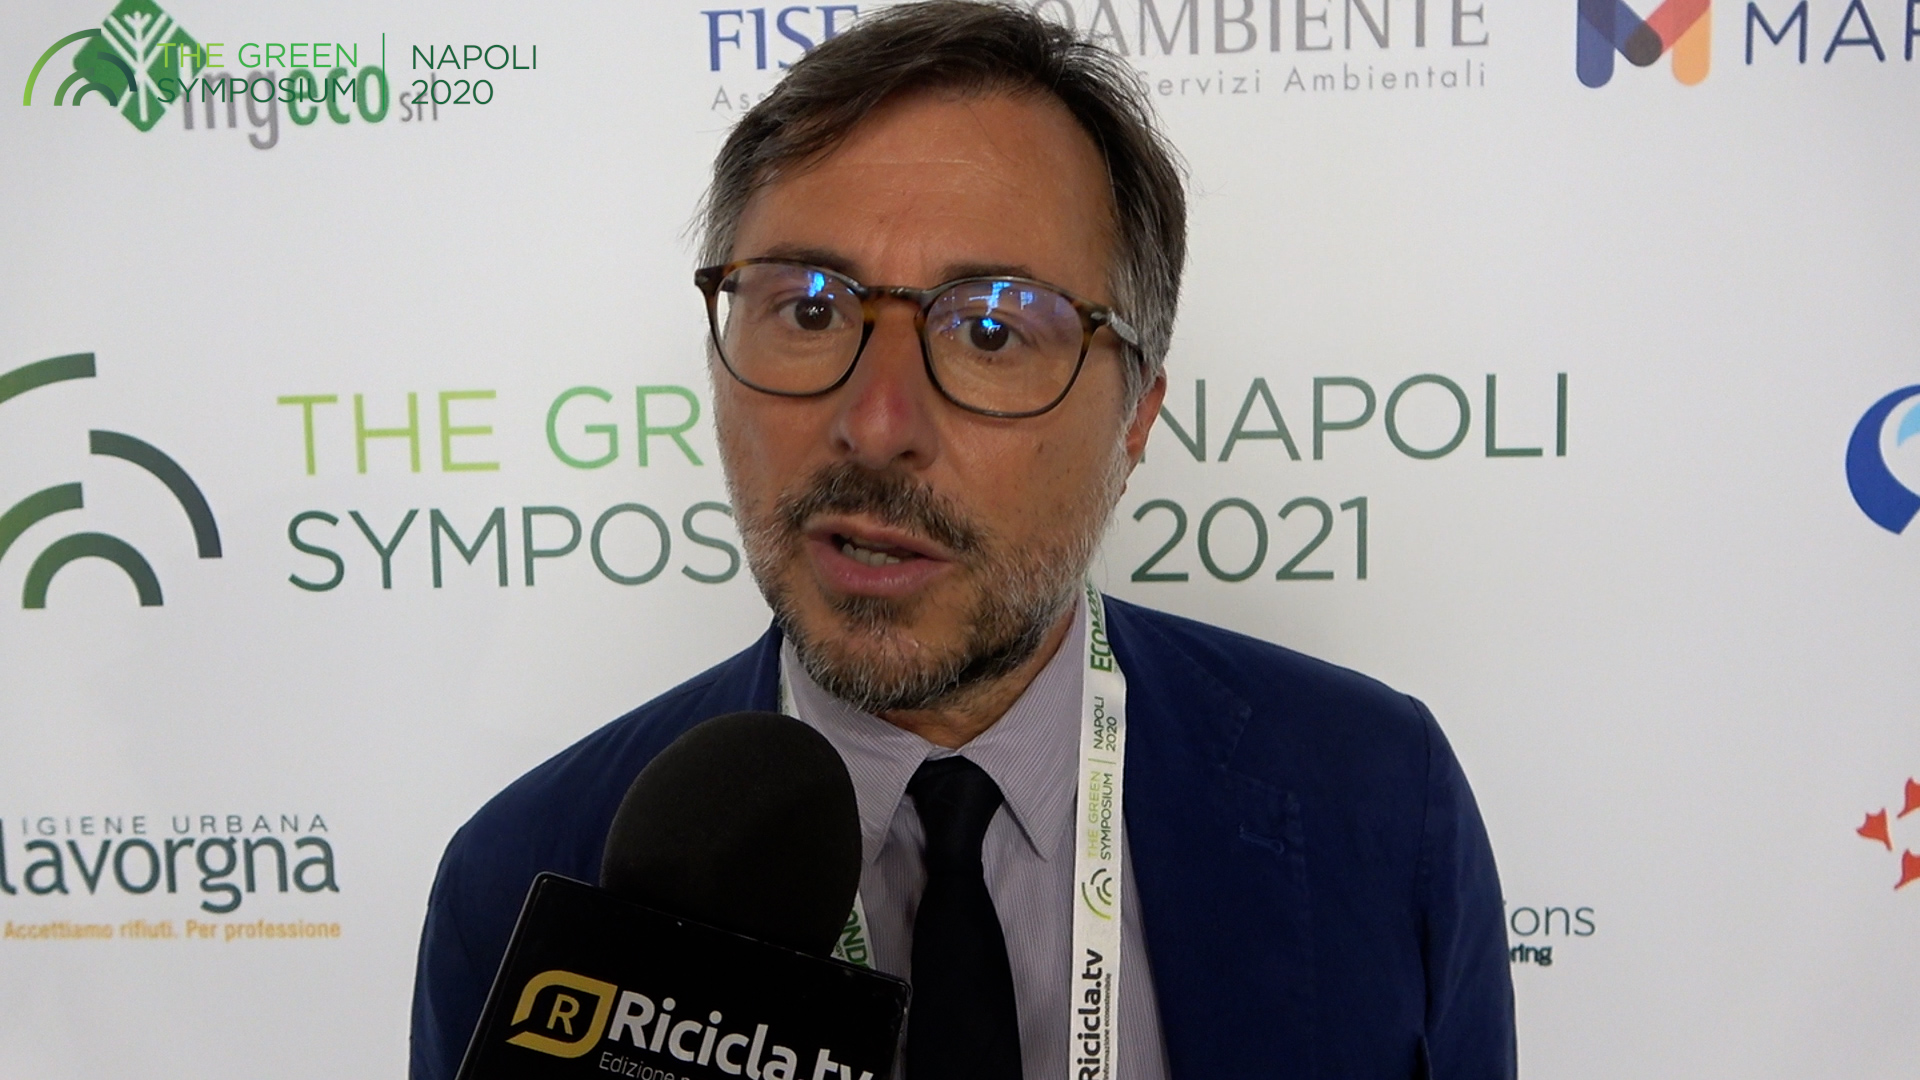 Green Symposium 2021: intervista a Roberto Di Molfetta - Vicedirettore Comieco